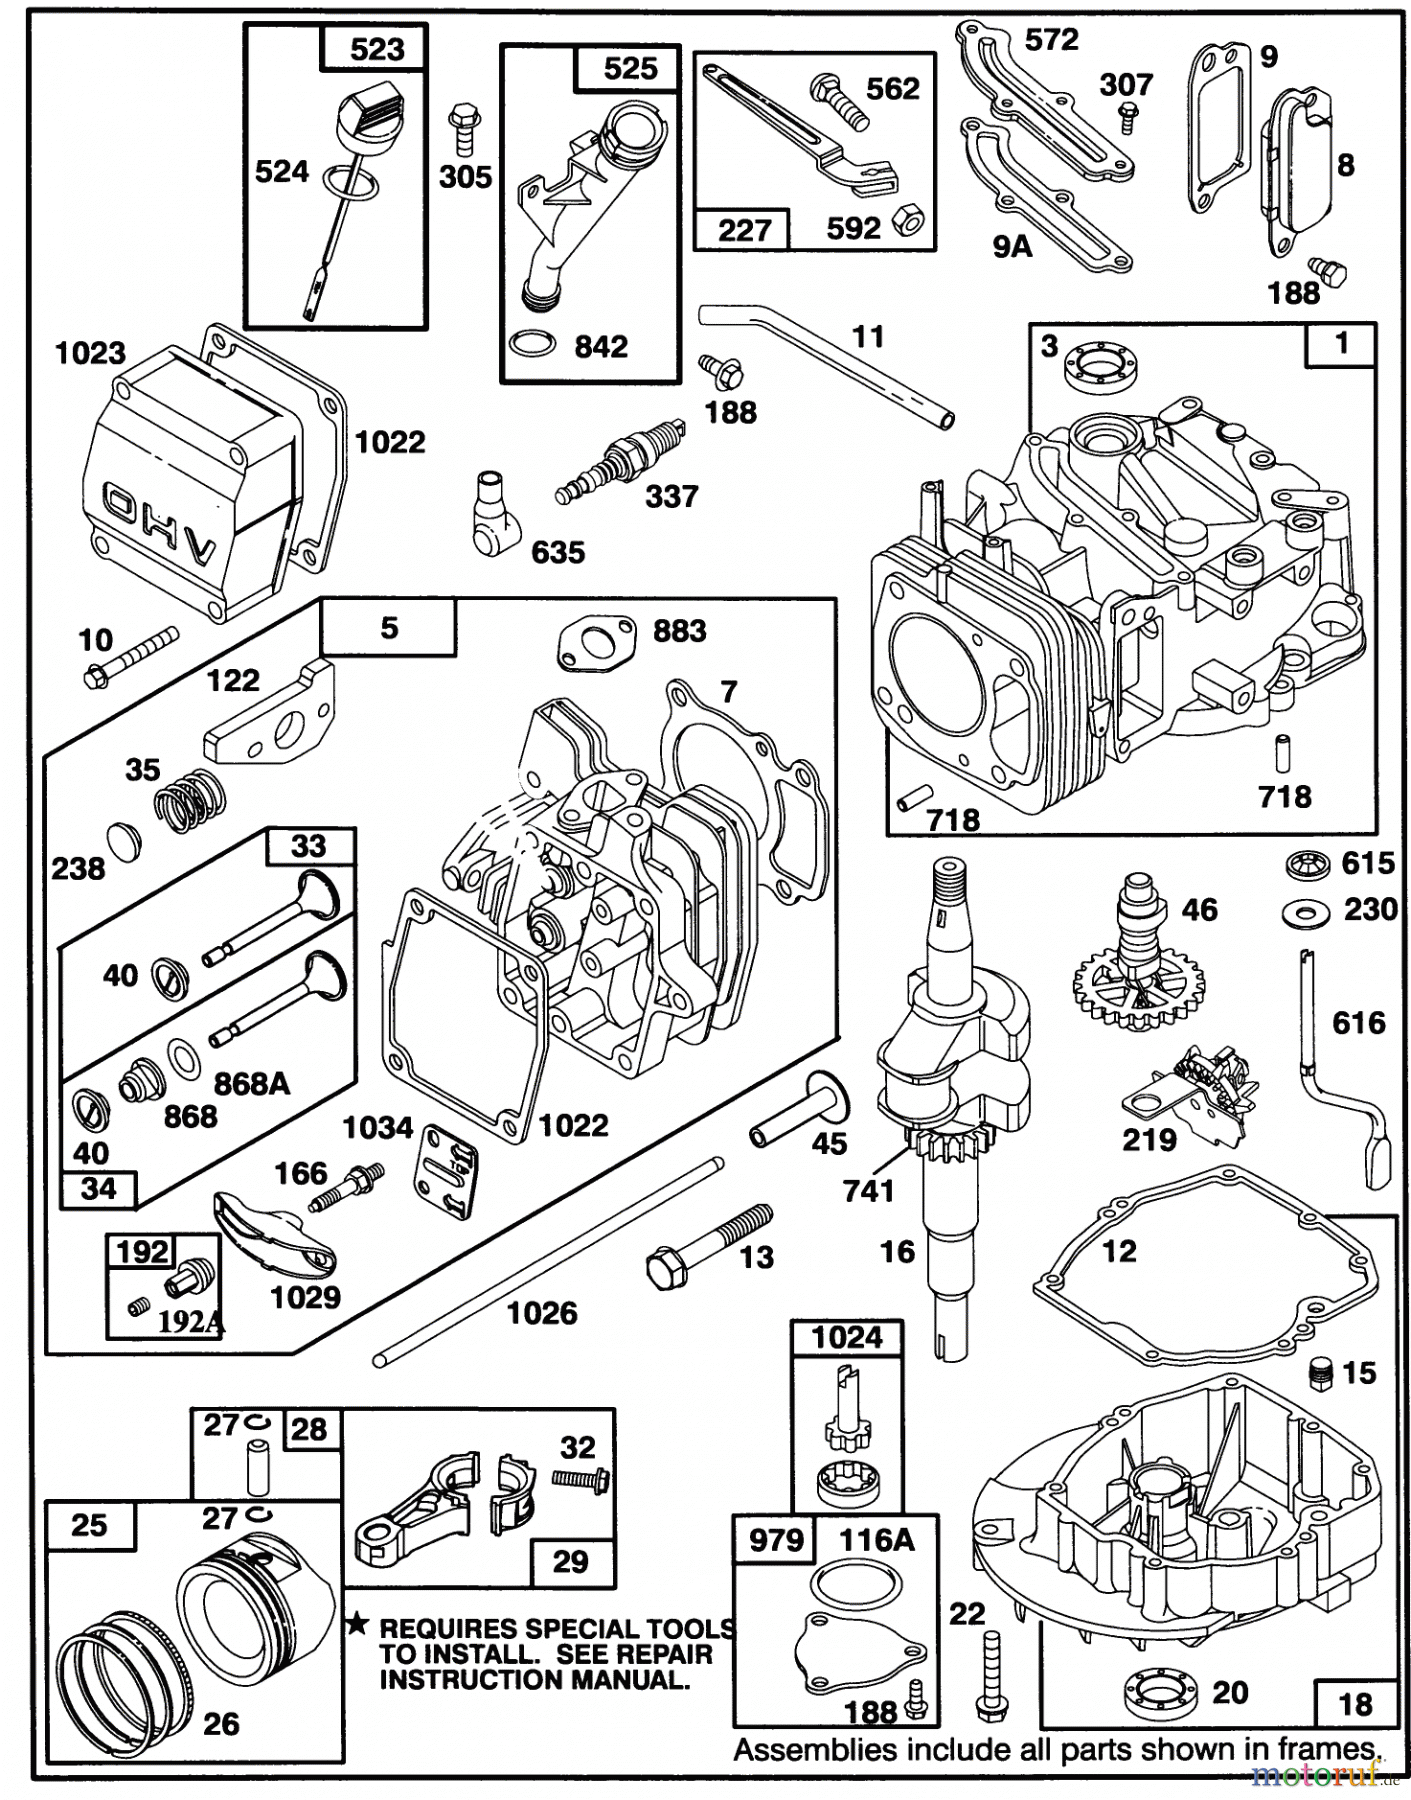  Toro Neu Mowers, Walk-Behind Seite 2 26631B - Toro Lawnmower, 1994 (4900001-4999999) ENGINE GTS 150 #2